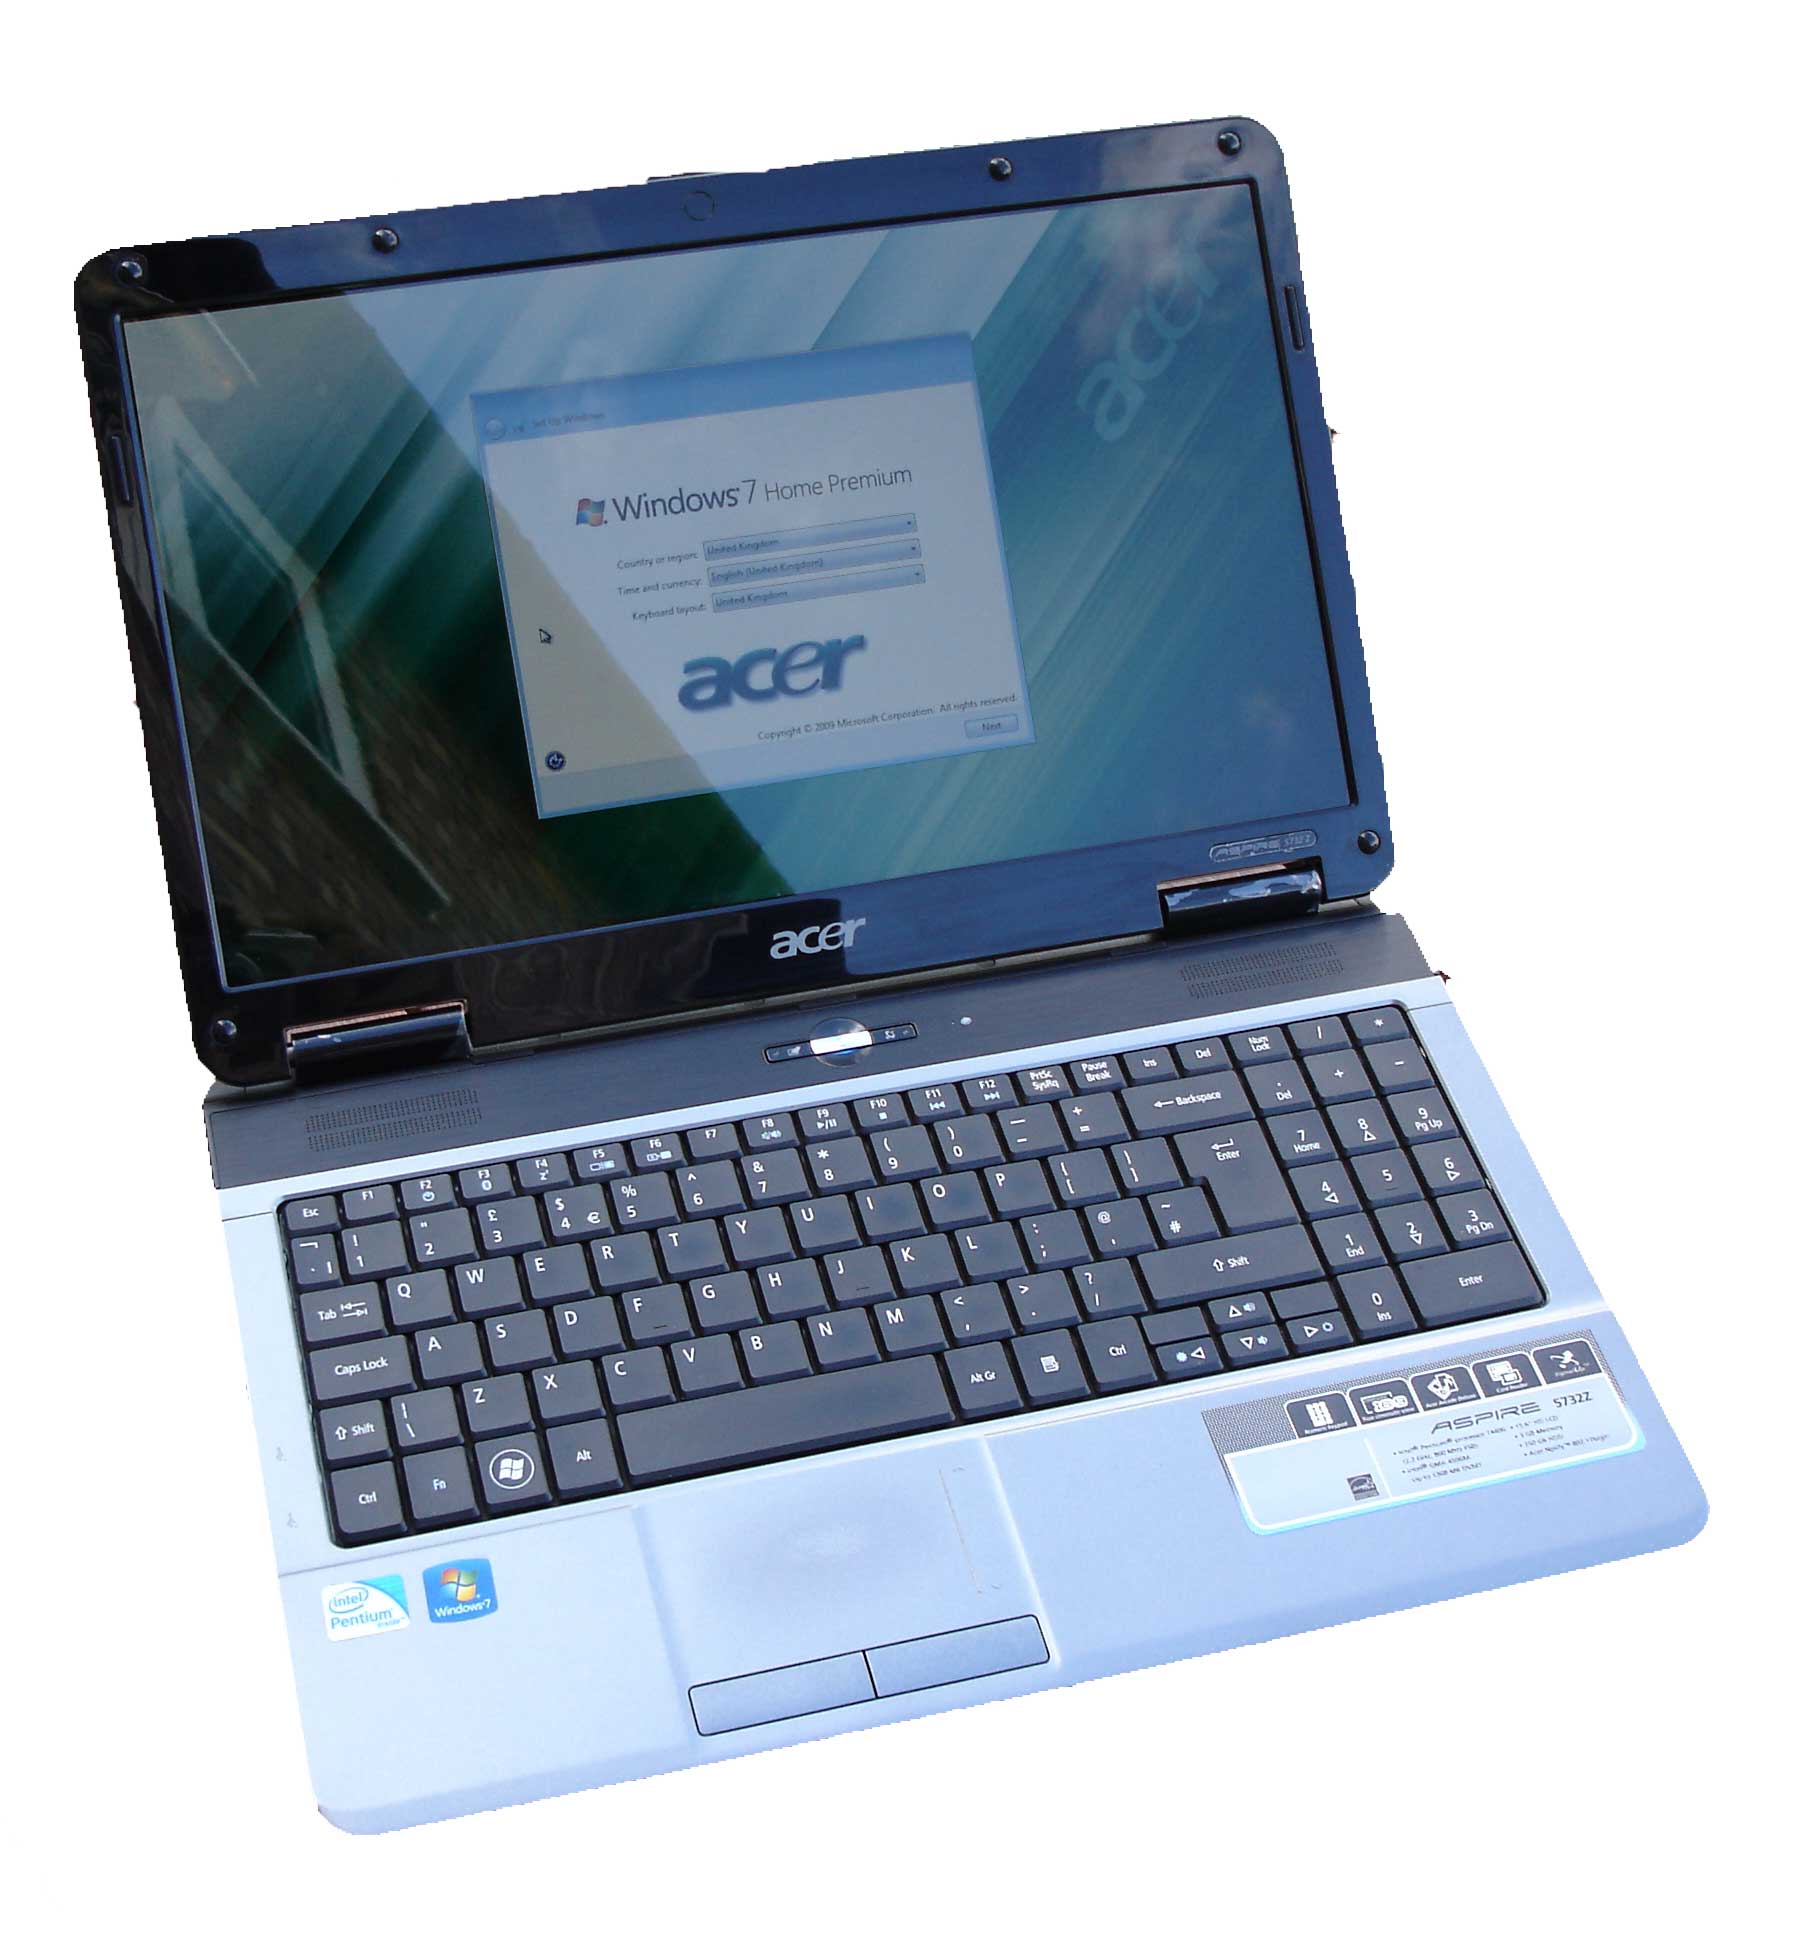 Acer Aspire Laptop Windows Home Premium